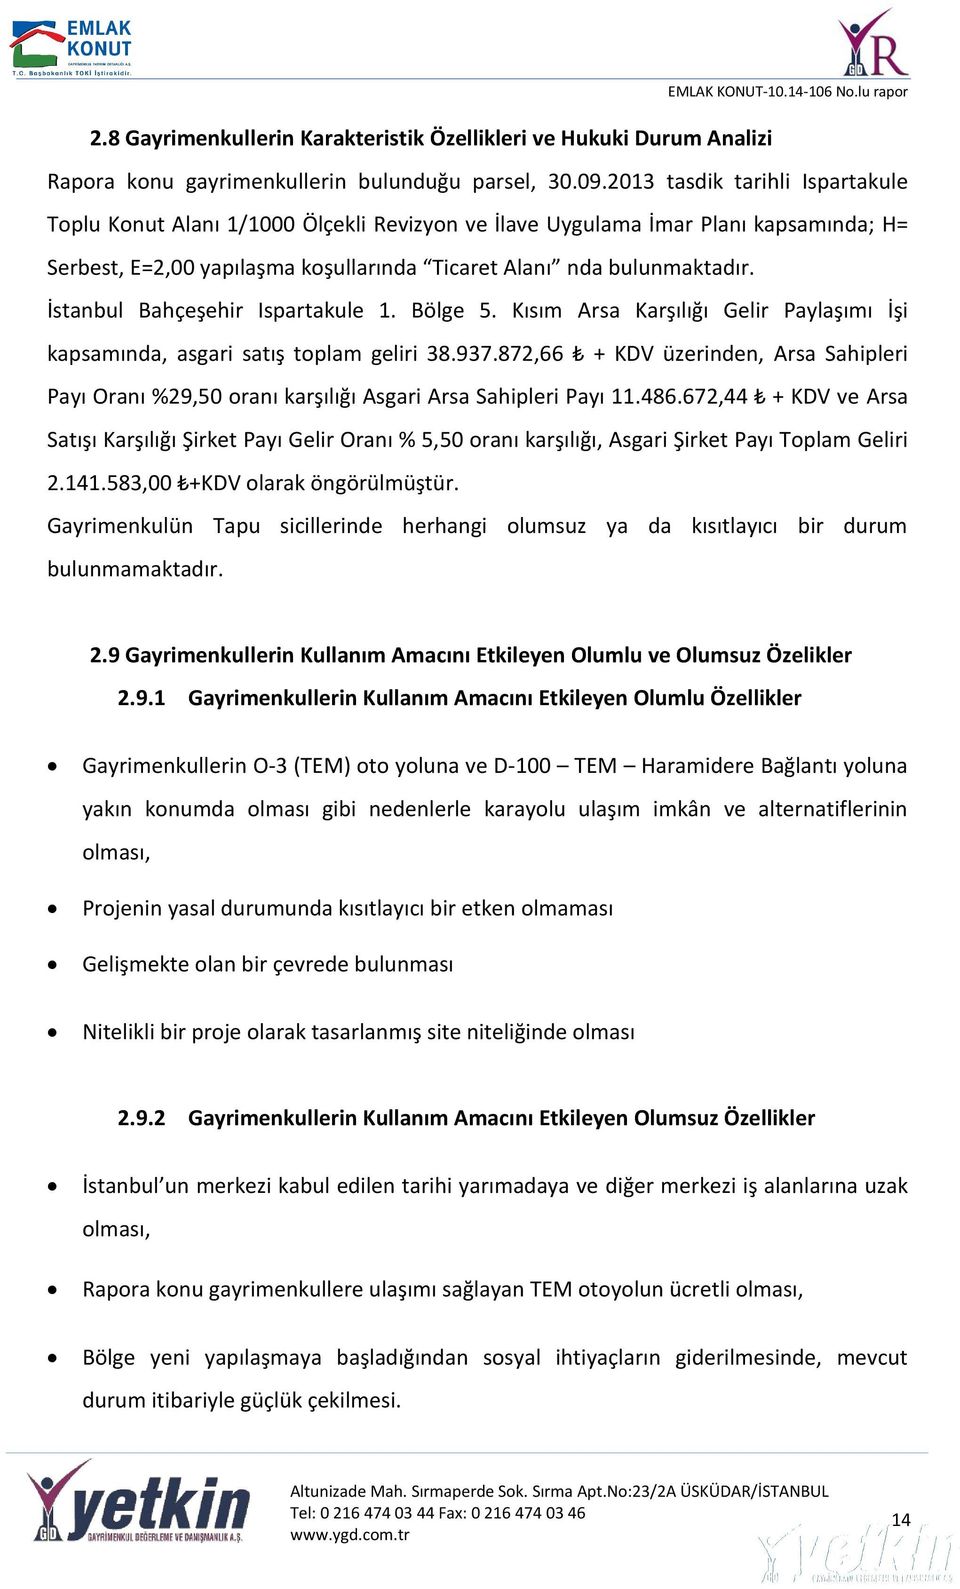 İstanbul Bahçeşehir Ispartakule 1. Bölge 5. Kısım Arsa Karşılığı Gelir Paylaşımı İşi kapsamında, asgari satış toplam geliri 38.937.